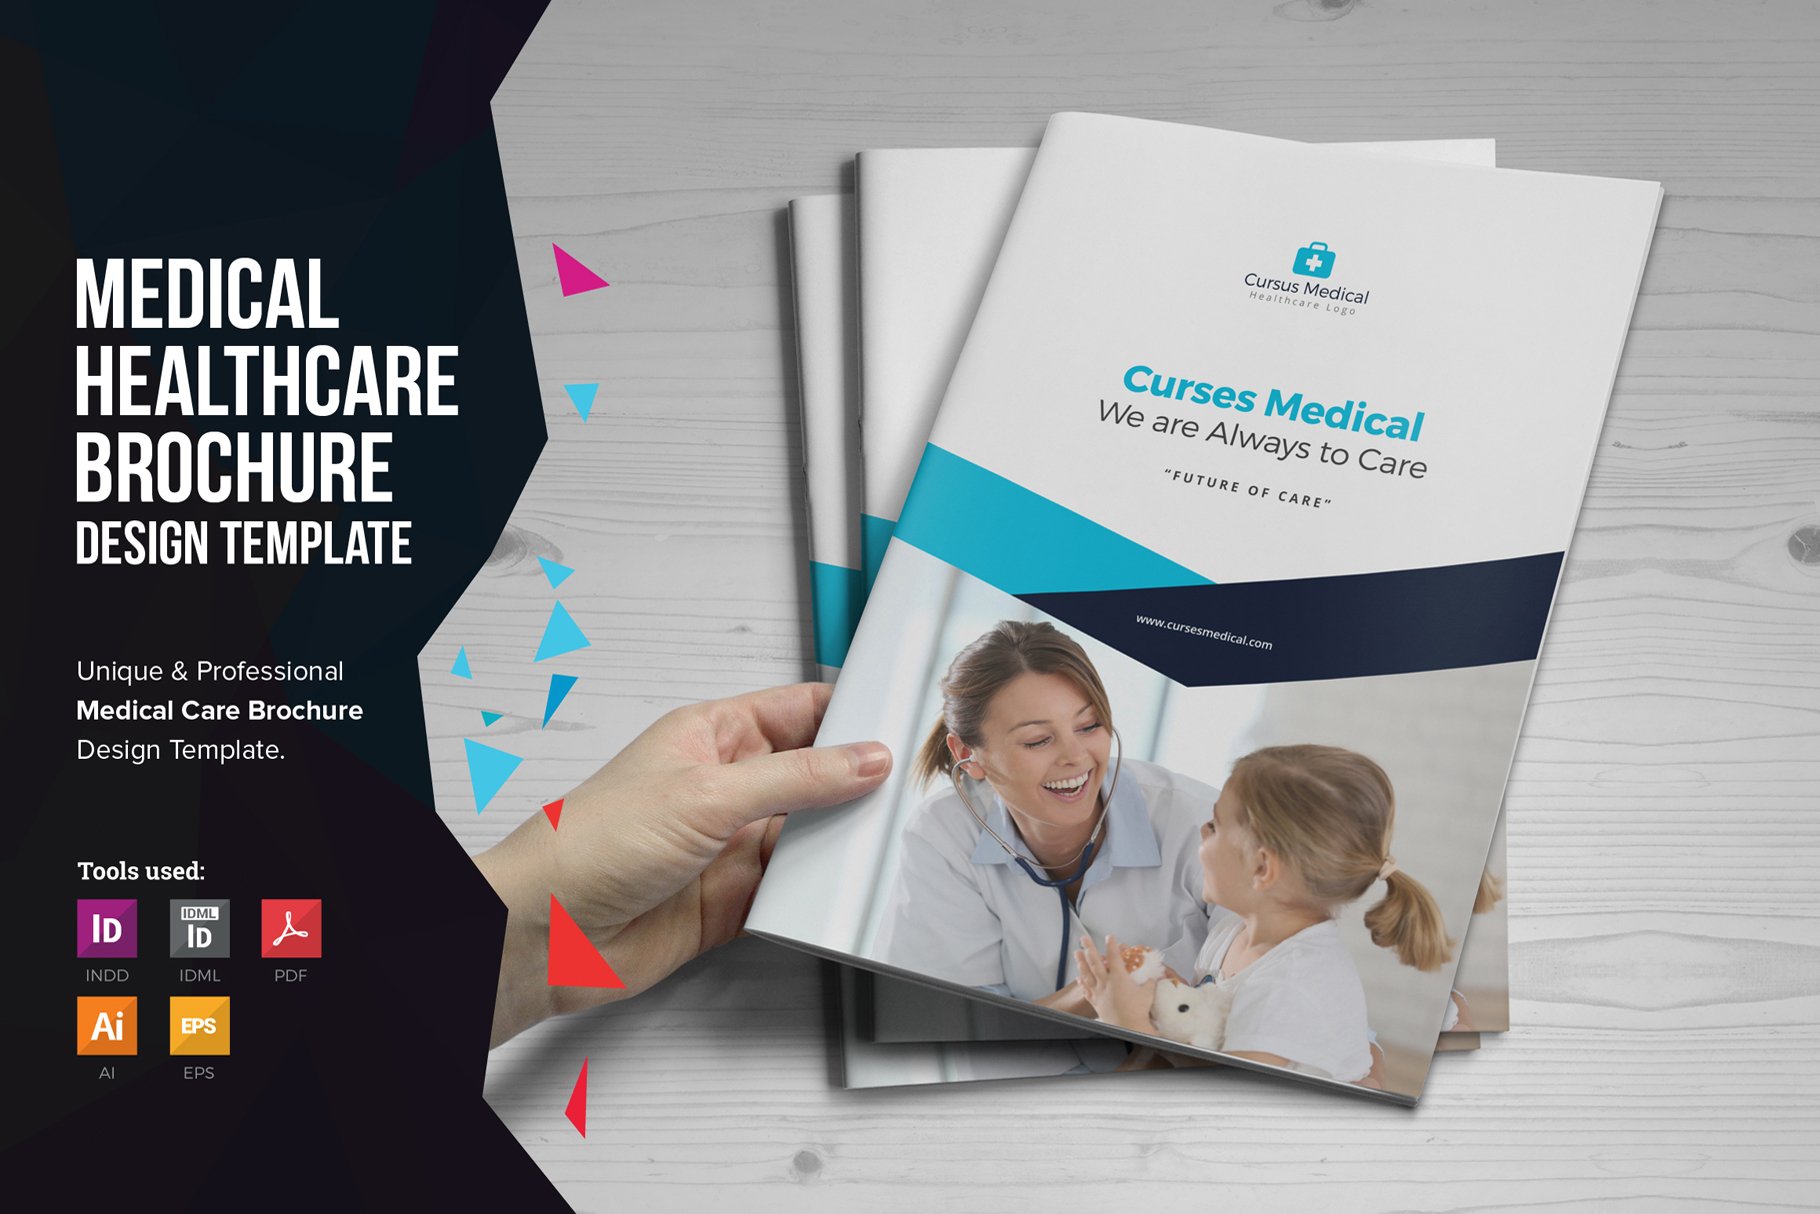 Medical HealthCare Brochure v1 cover image.